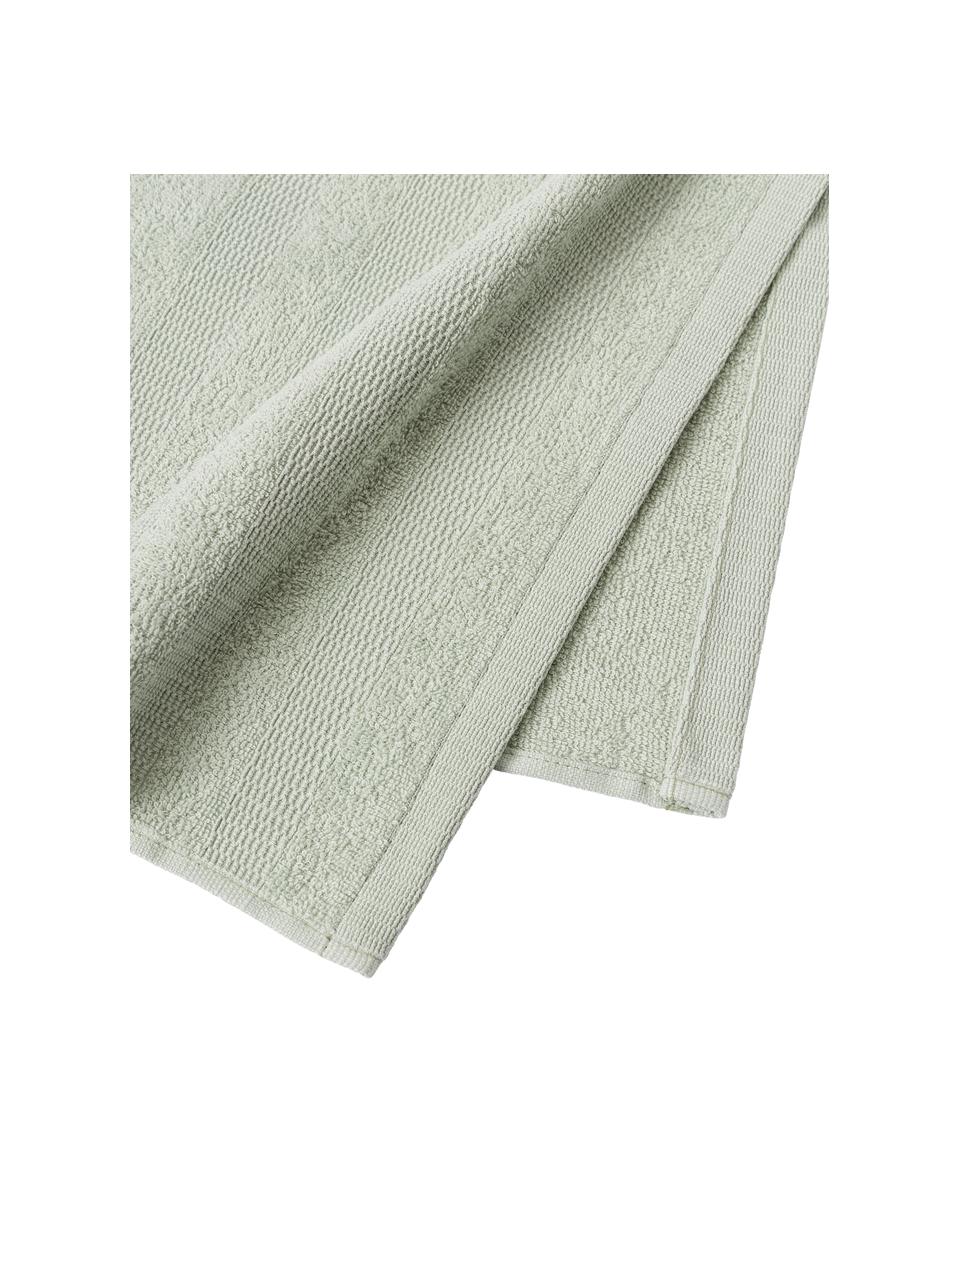 Komplet ręczników z bawełny Camila, 4 elem., Szałwiowy zielony, Komplet z różnymi rozmiarami